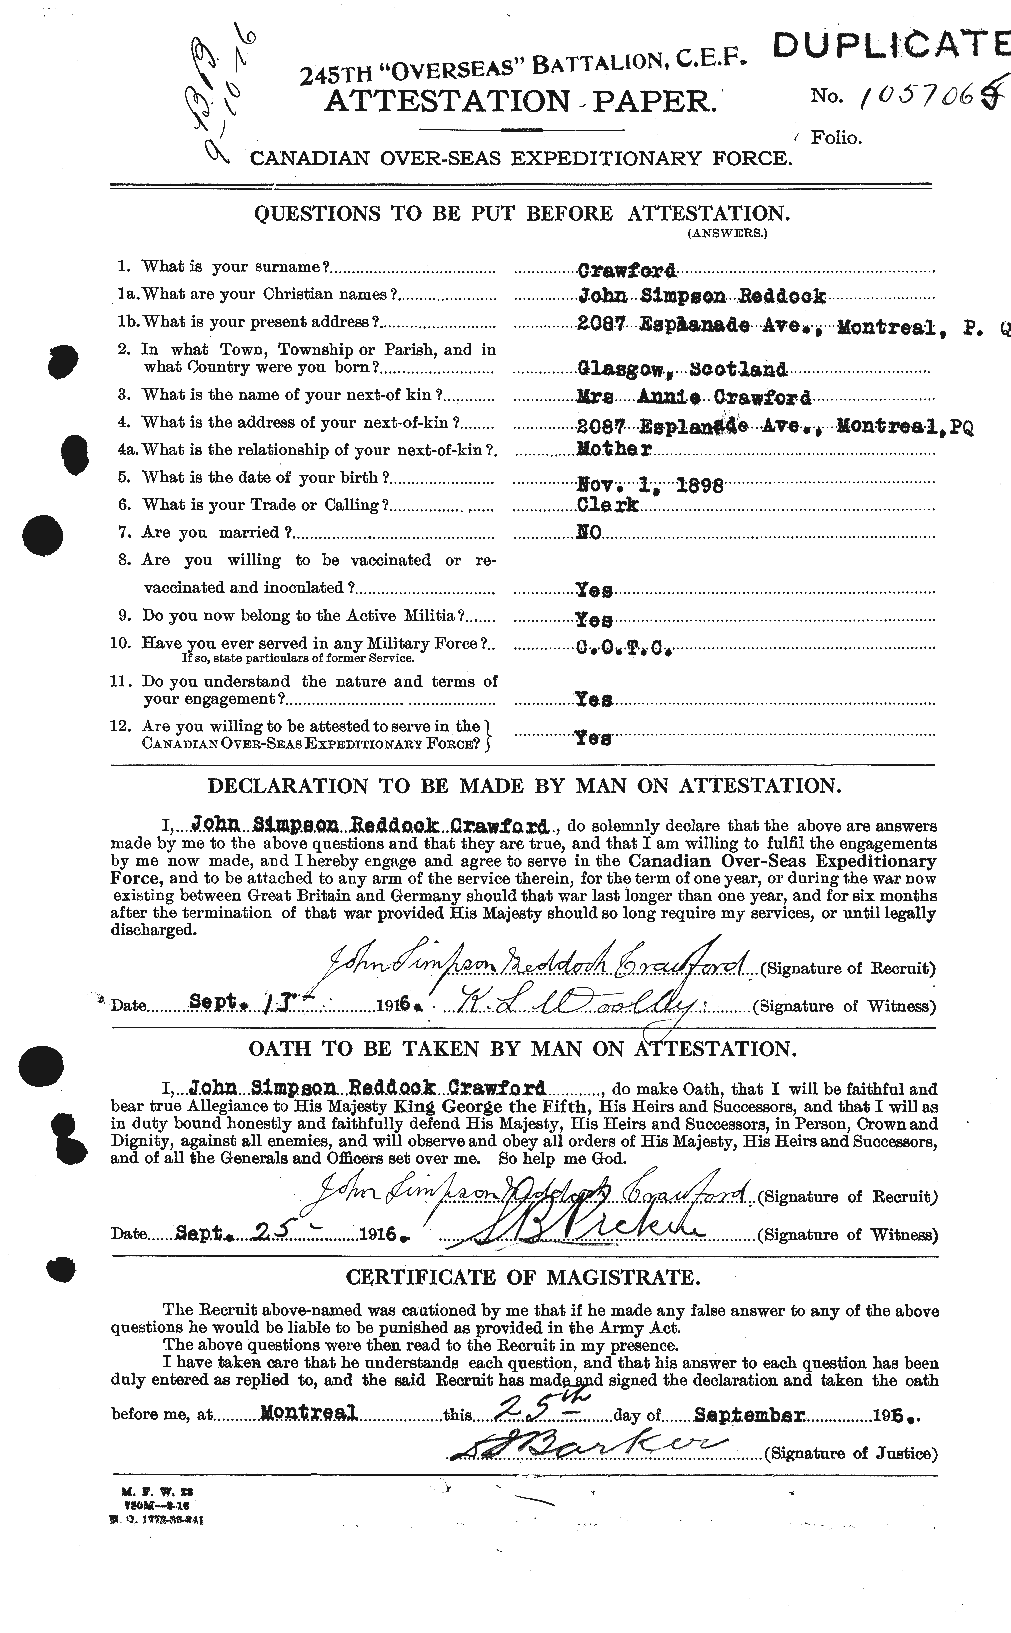 Dossiers du Personnel de la Première Guerre mondiale - CEC 061824a